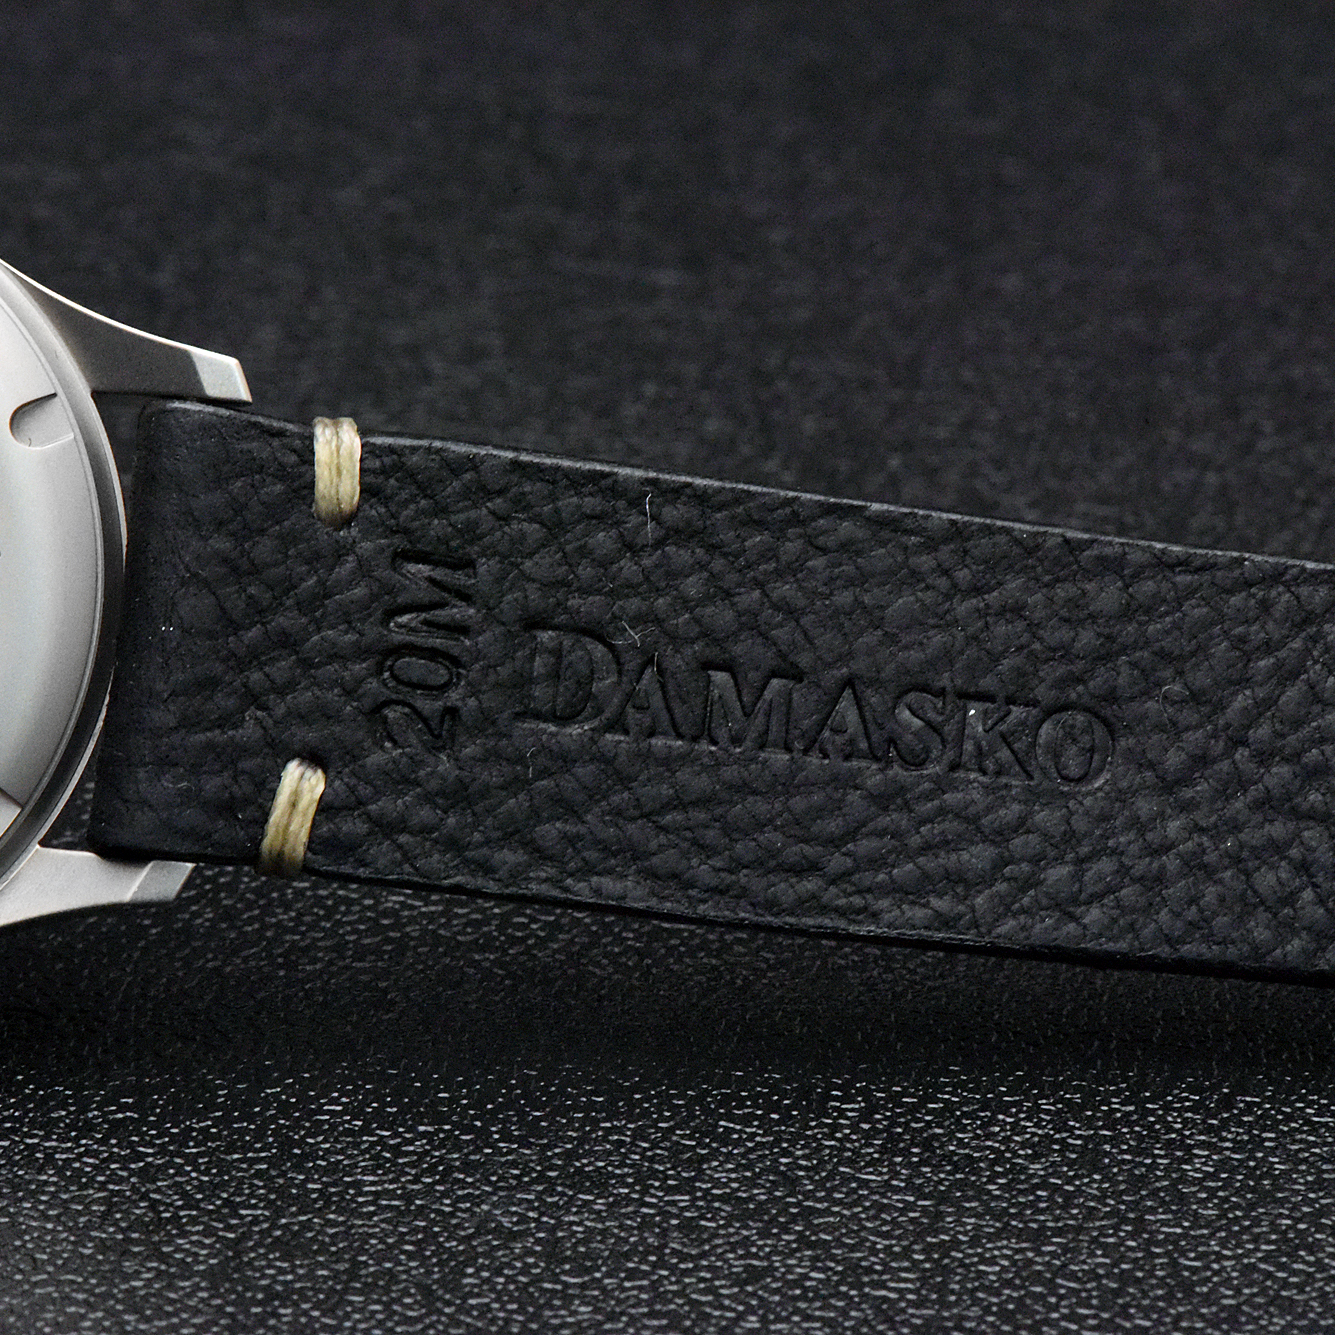 ダマスコ(DAMASKO) No.DS30L | 小柳時計店 | ブランド腕時計の正規販売